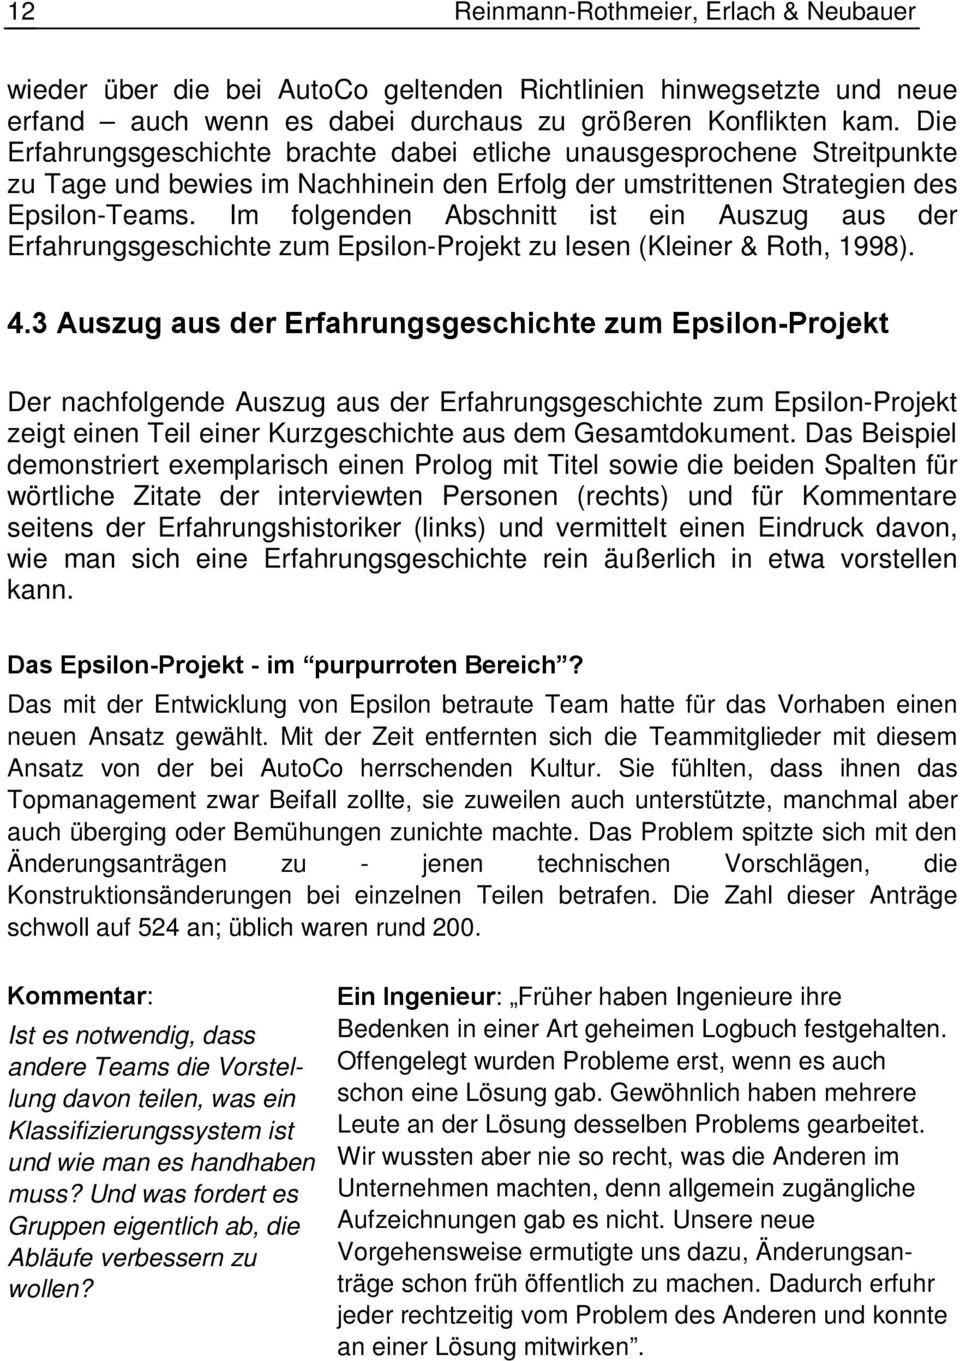 Im folgenden Abschnitt ist ein Auszug aus der Erfahrungsgeschichte zum Epsilon-Projekt zu lesen (Kleiner & Roth, 1998). 4.